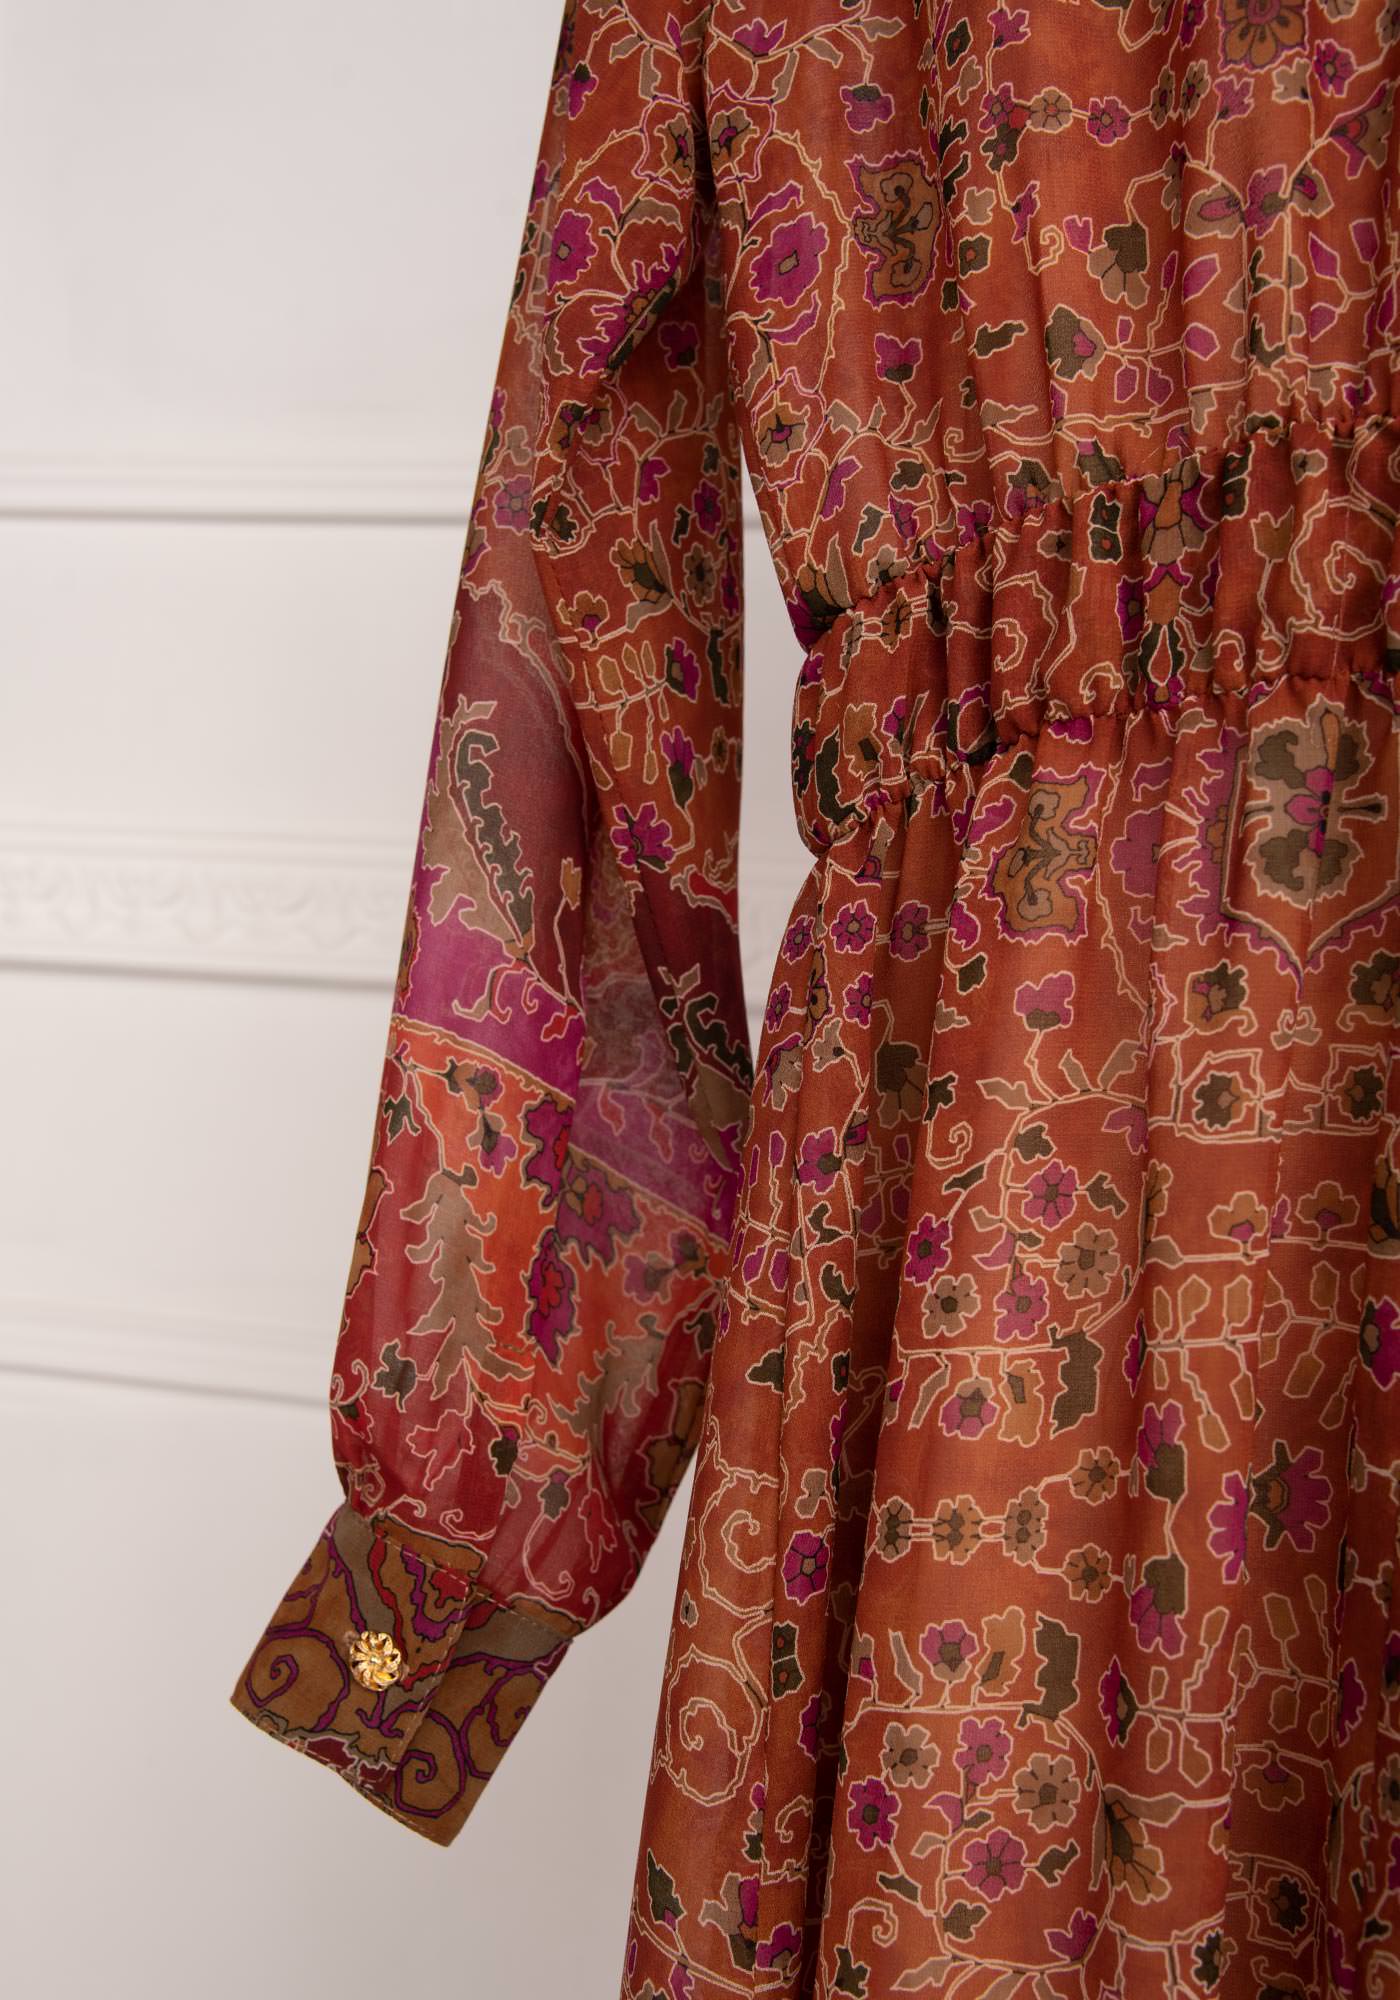 Midi Dress with Block pleats in Multicolour Chiffon